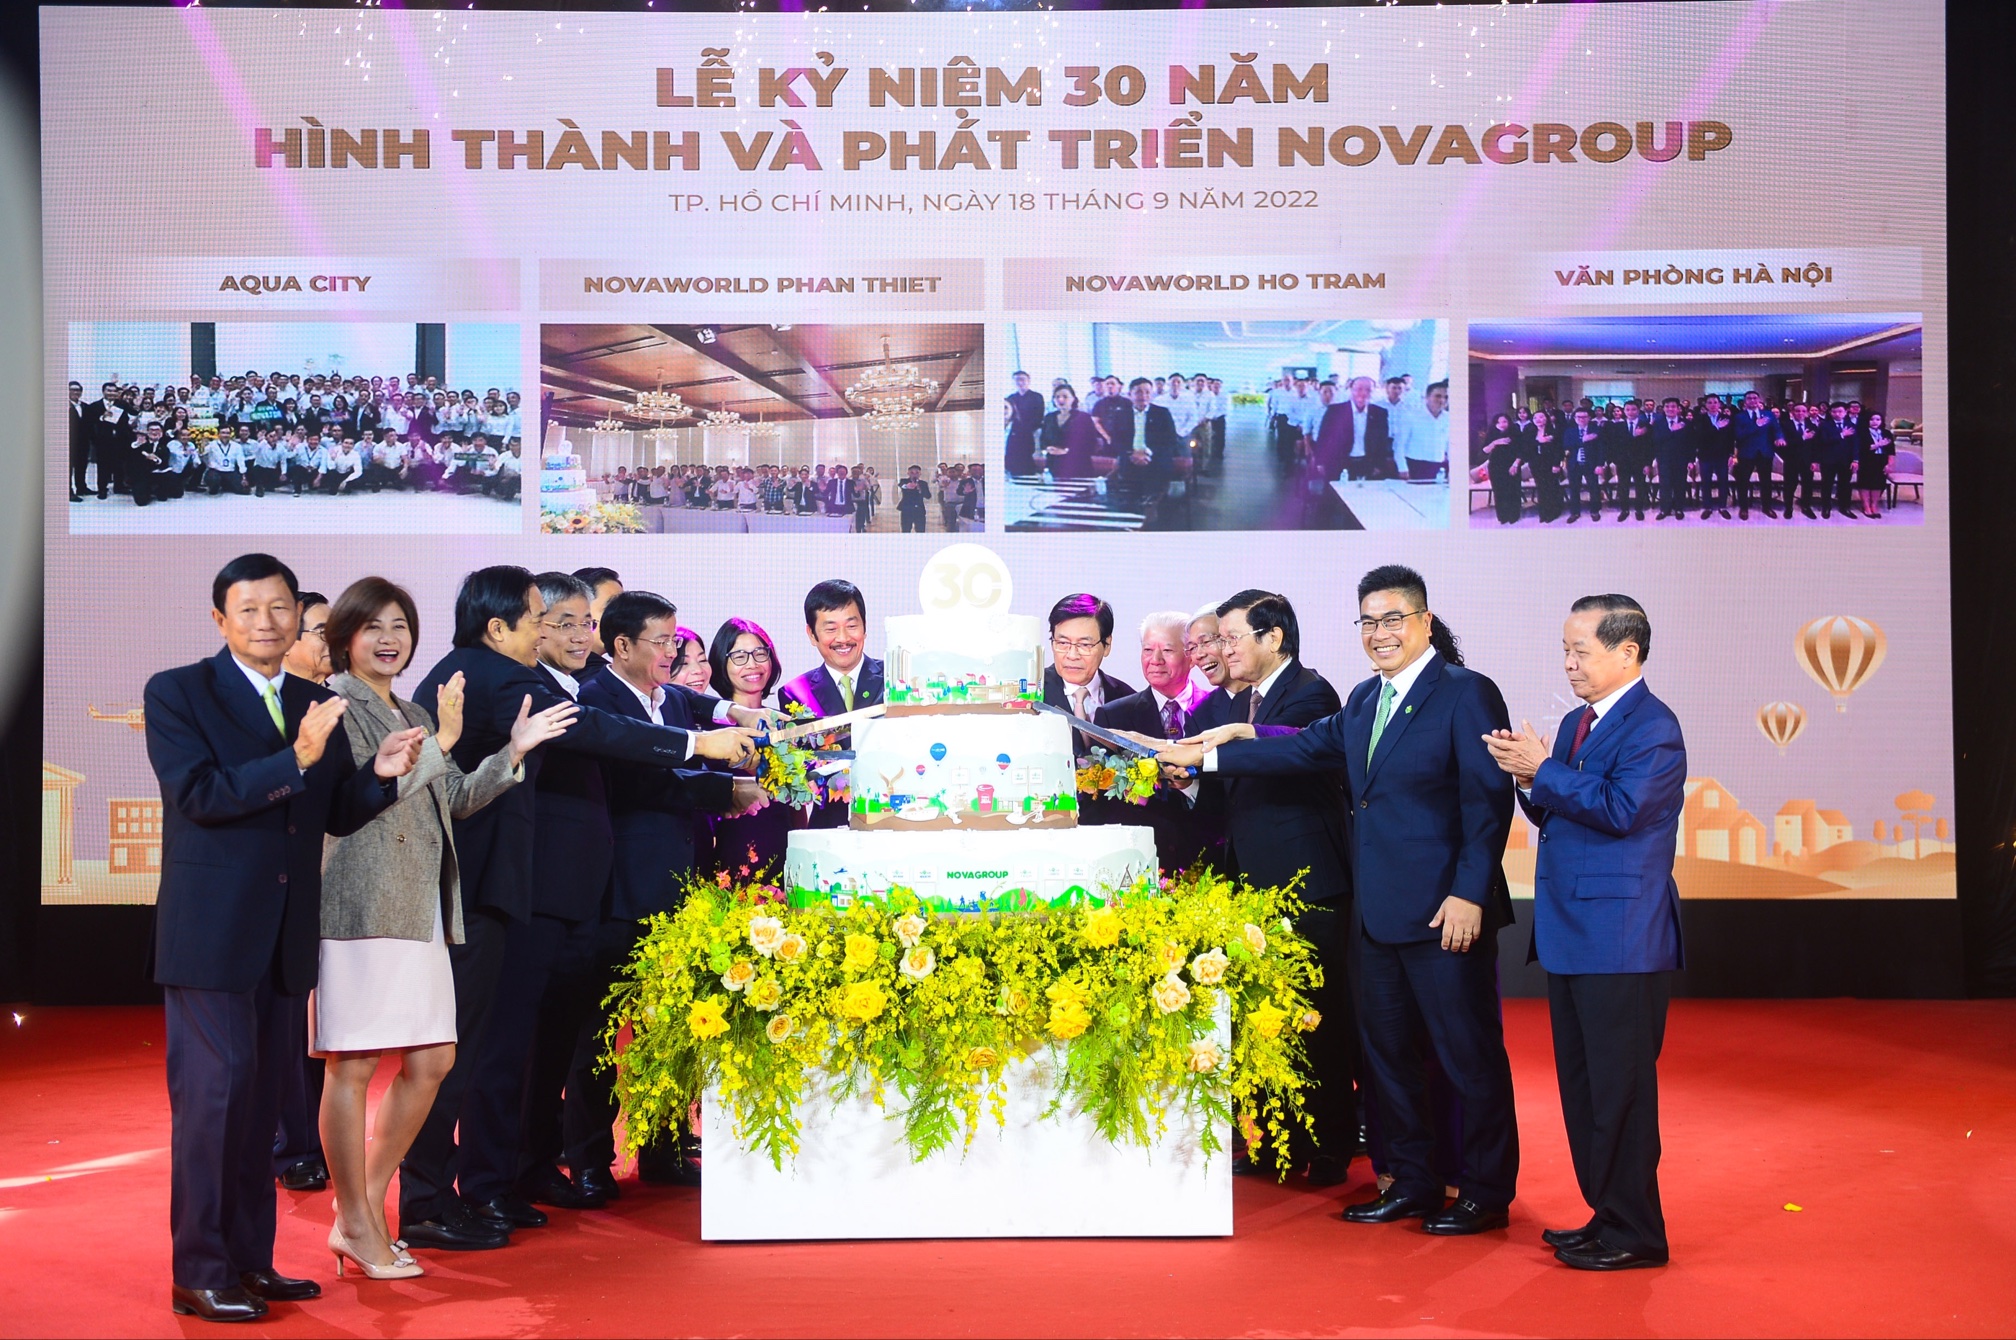 Lãnh đạo tập đoàn NovaGroup cắt bánh sinh nhật tuổi 30 cùng nhân viên tại các đầu cầu NovaWorld Phan Thiet, NovaWorld Ho Tram, Aqua City và Văn phòng Hà Nội.